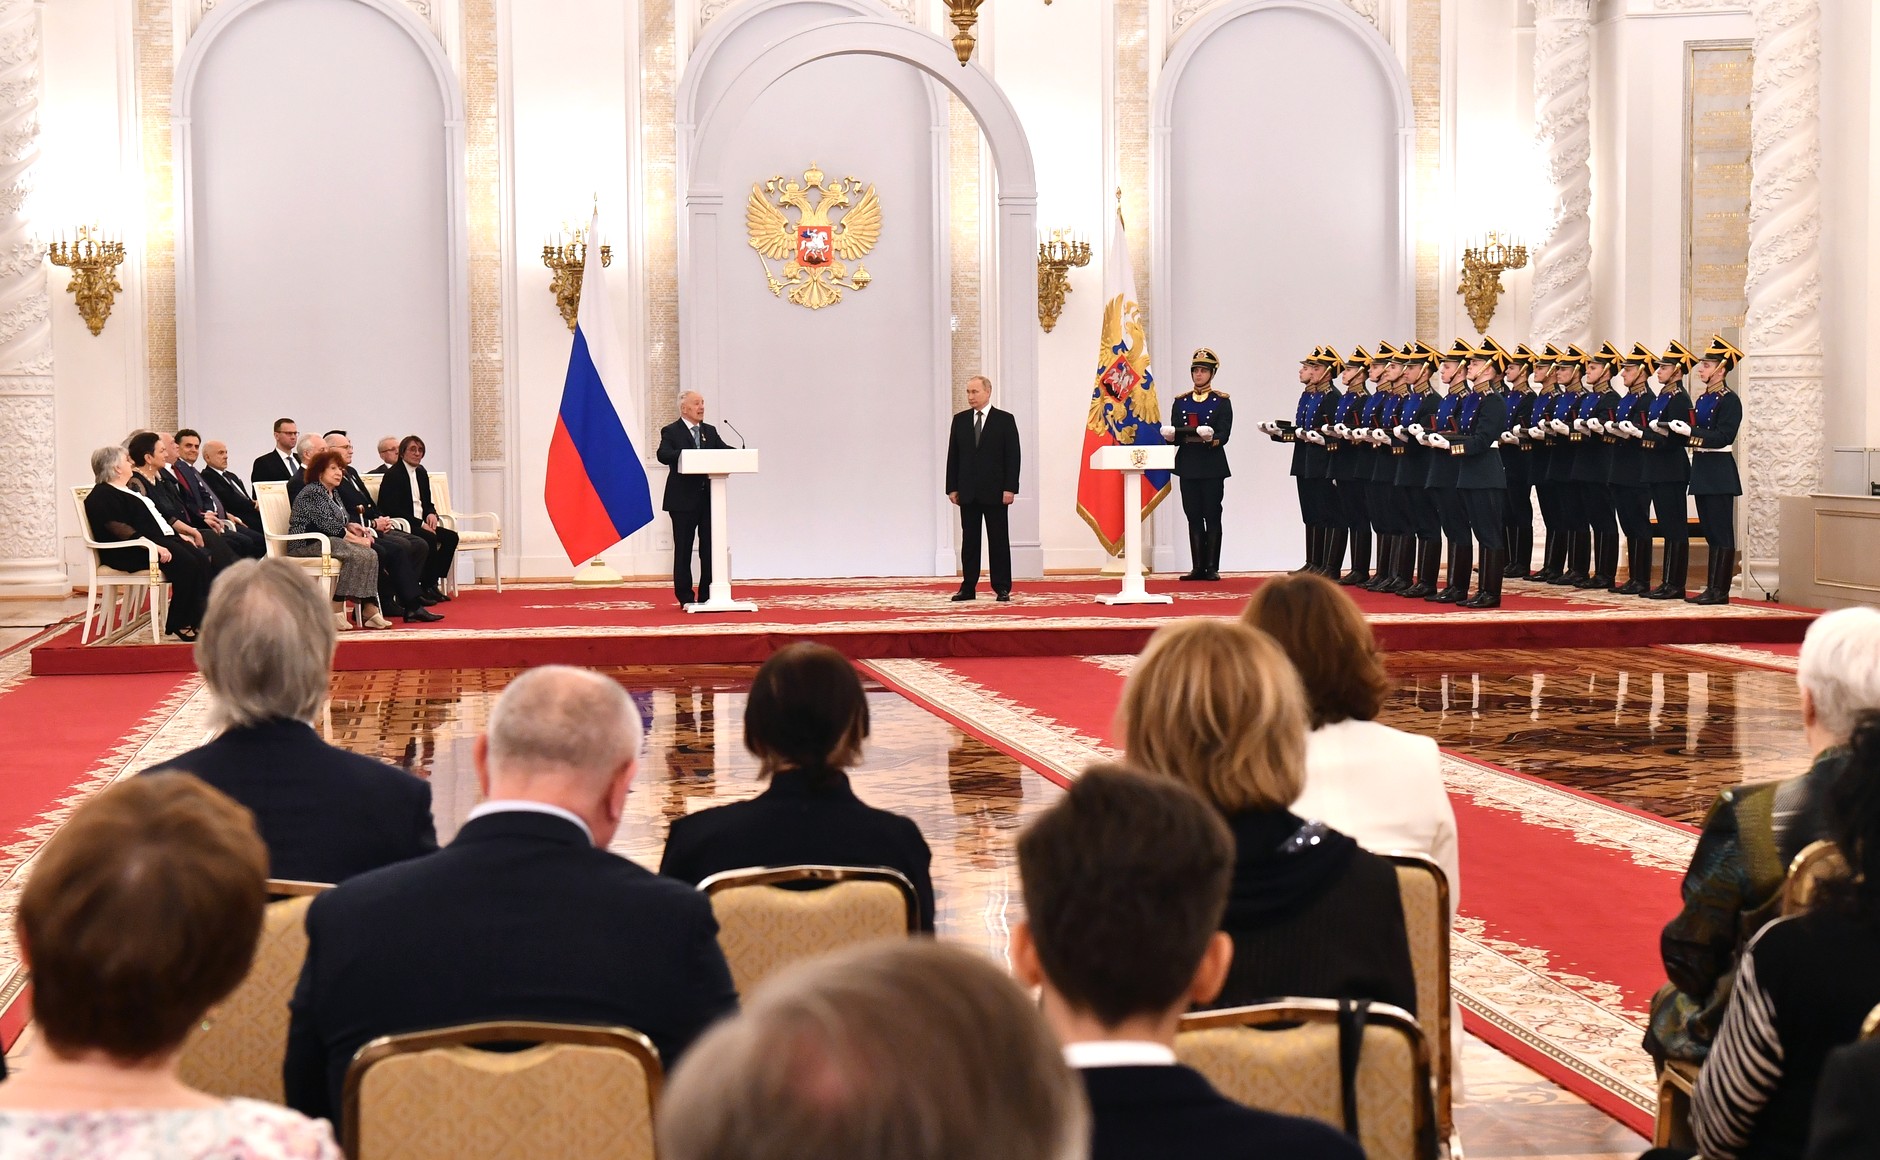 Губернатор Дмитрий Азаров поздравил Юрия Башмета с золотой звездой «Герой труда Российской Федерации»